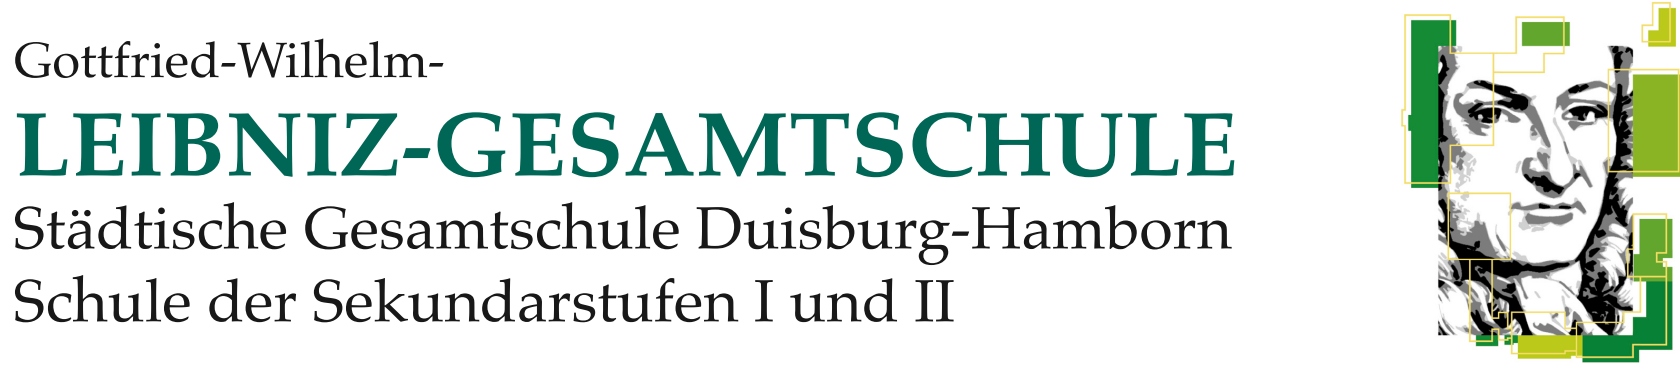 Gottfried-Wilhelm-Leibniz-Gesamtschule